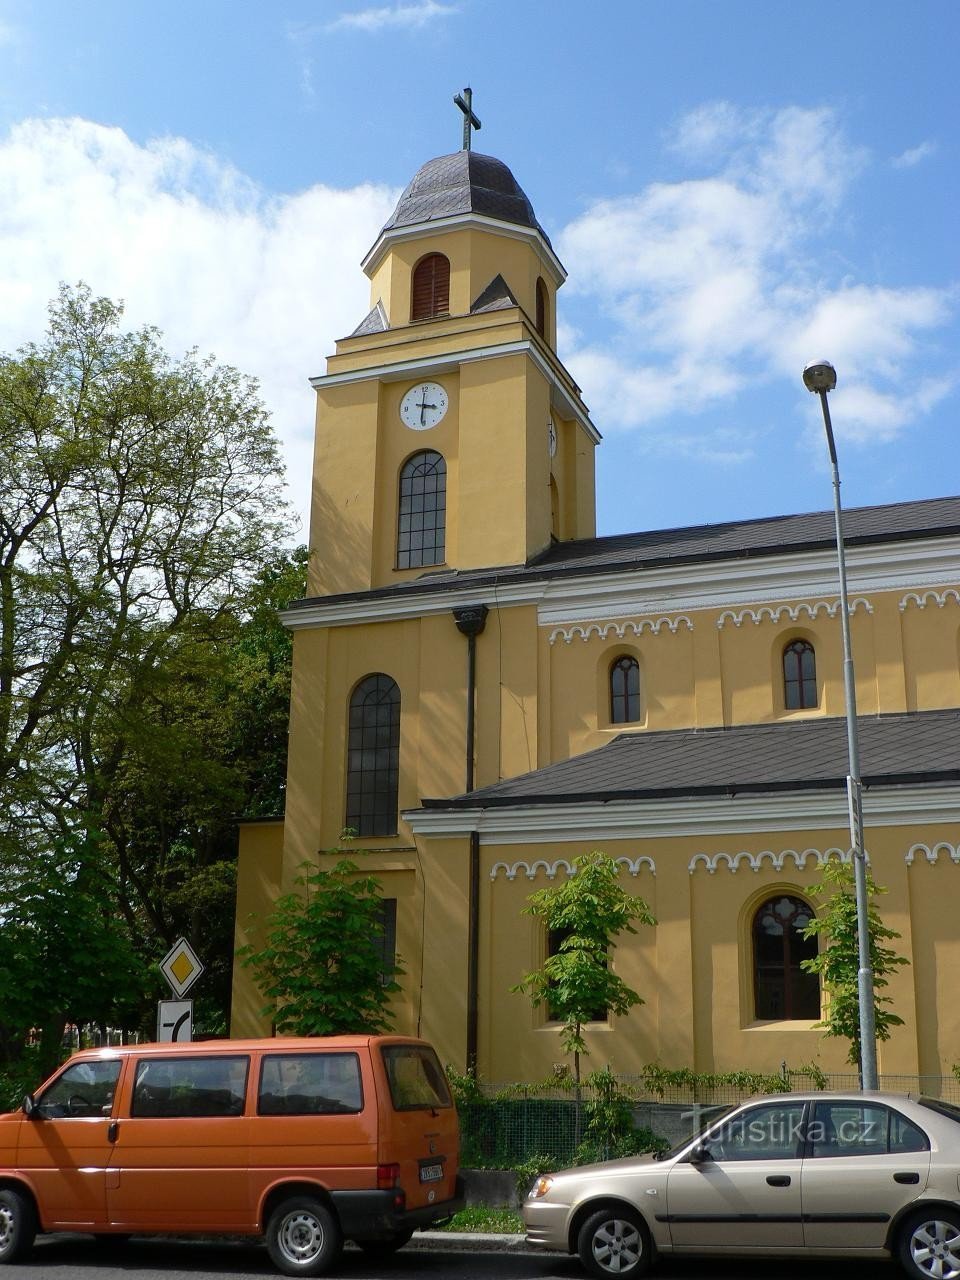 Tòa tháp của nhà thờ St. Peter và Paul